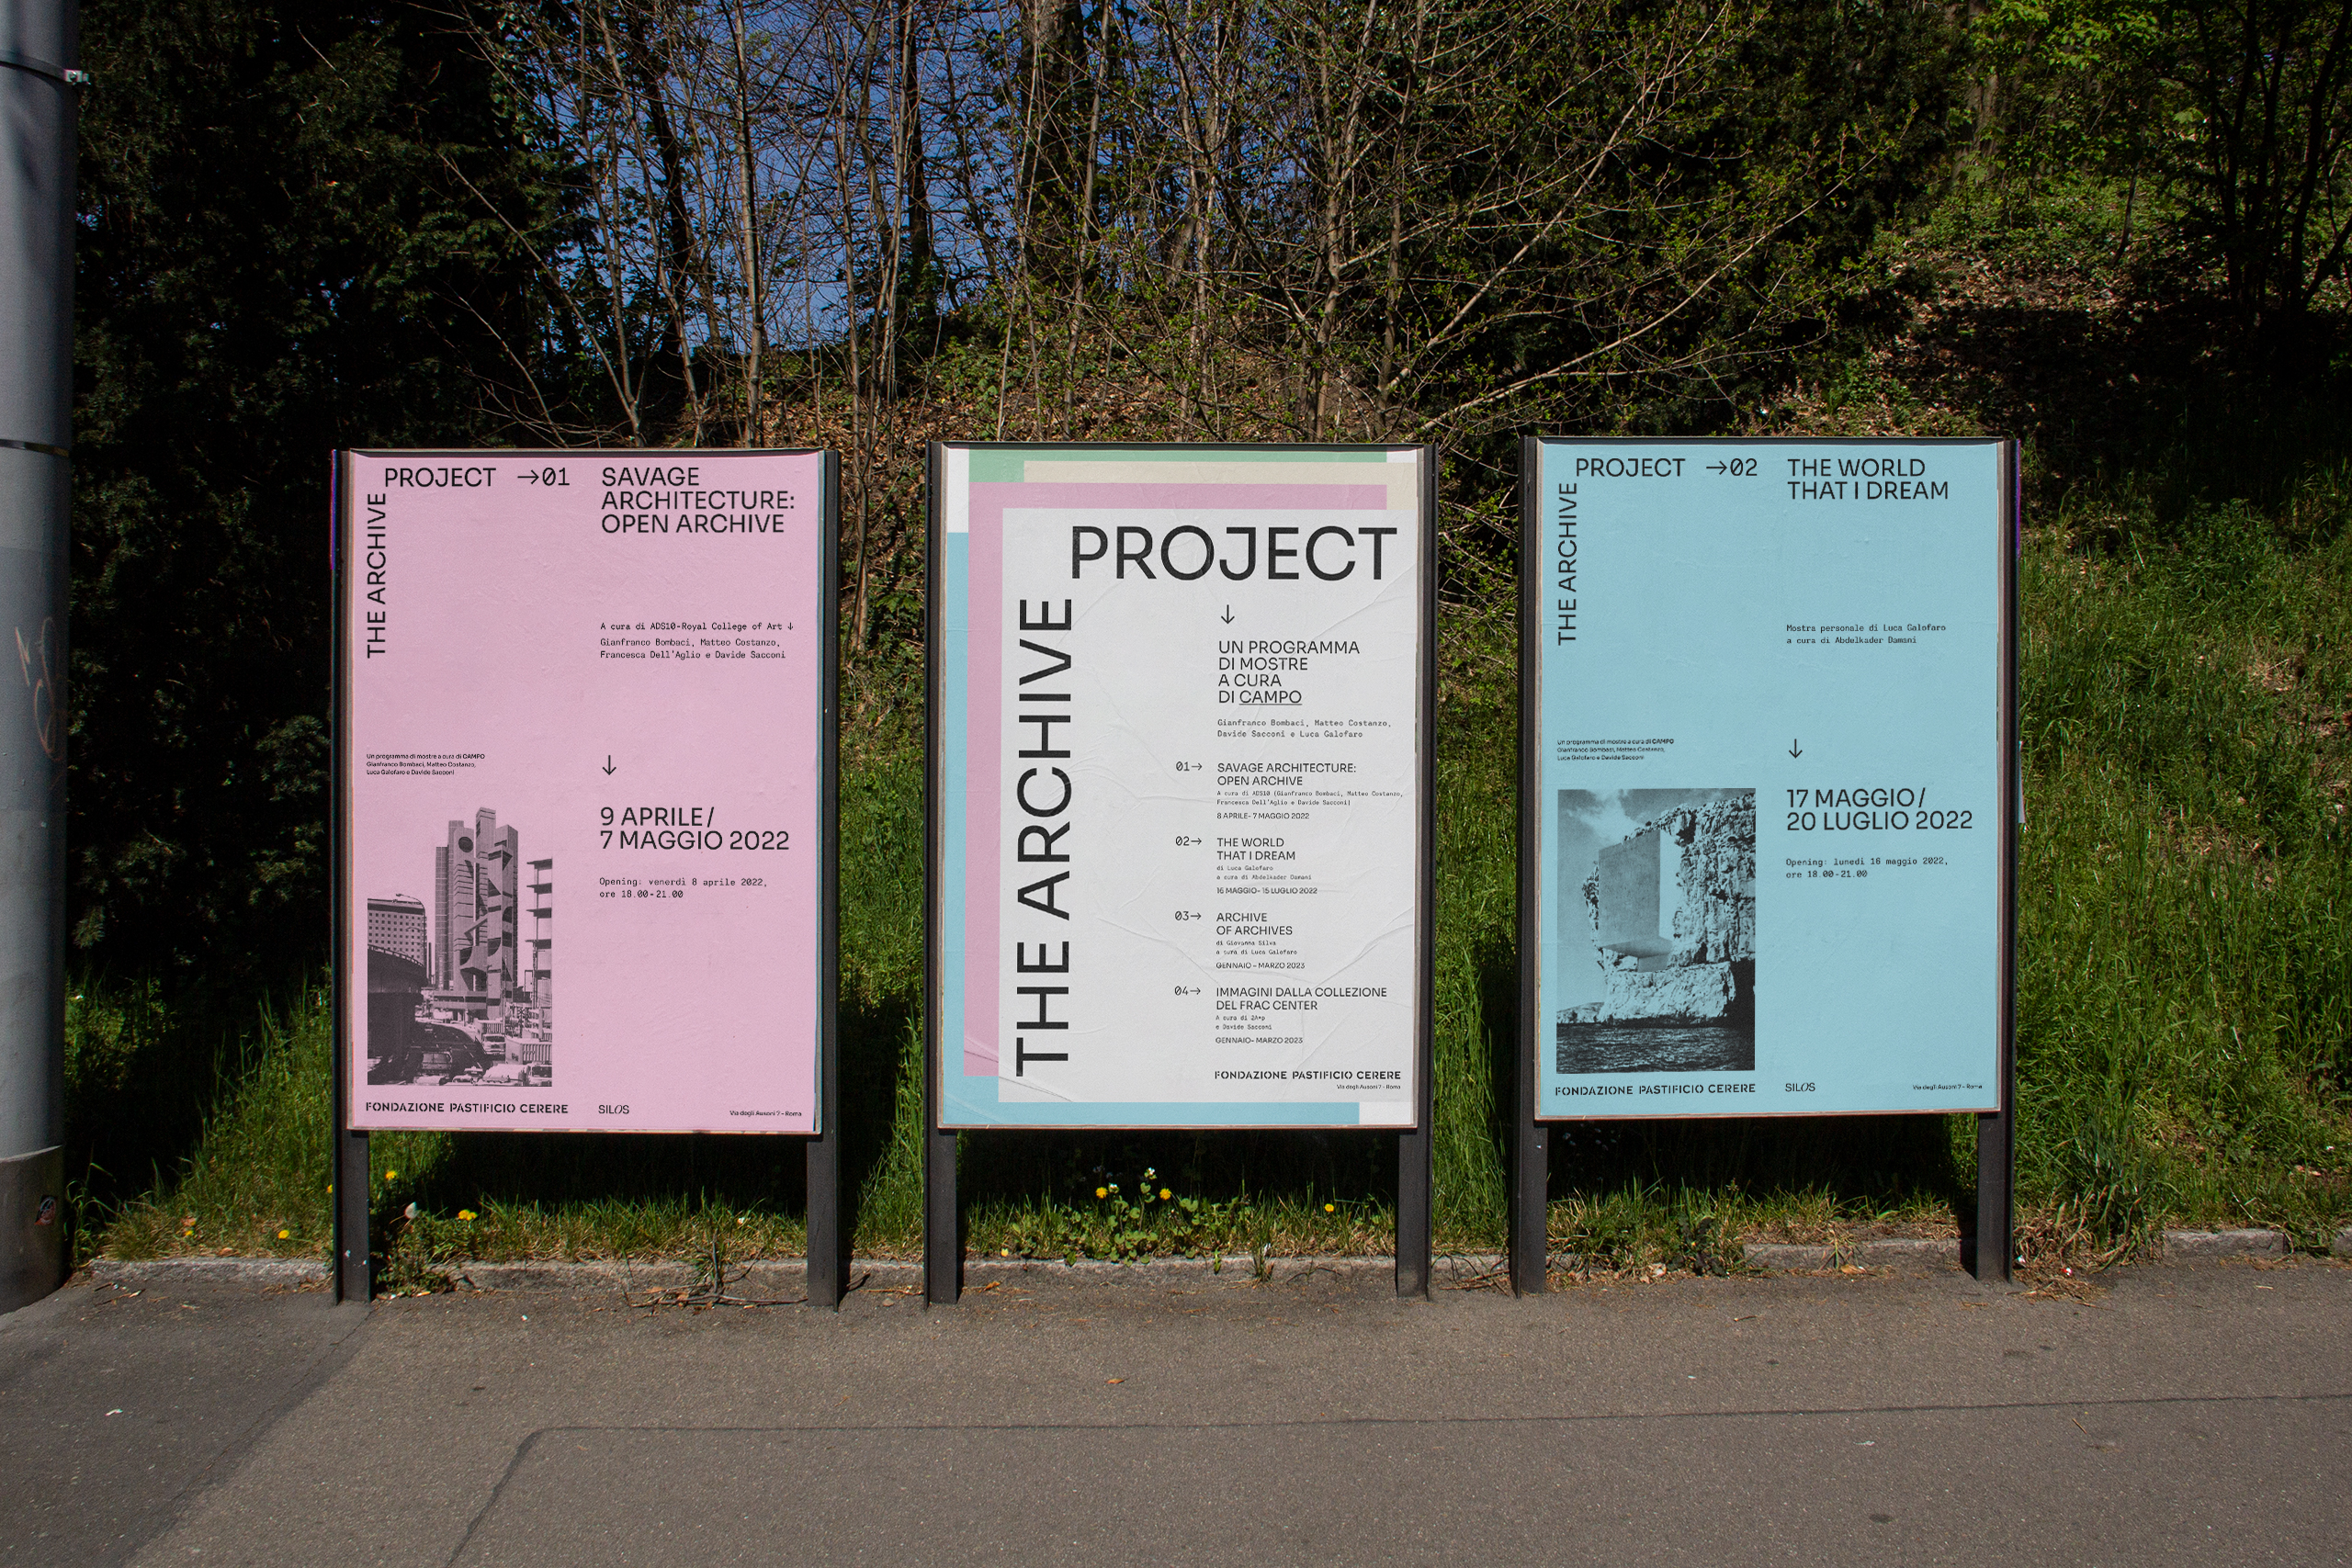 → Fondazione Pastificio Cerere - The Archive project